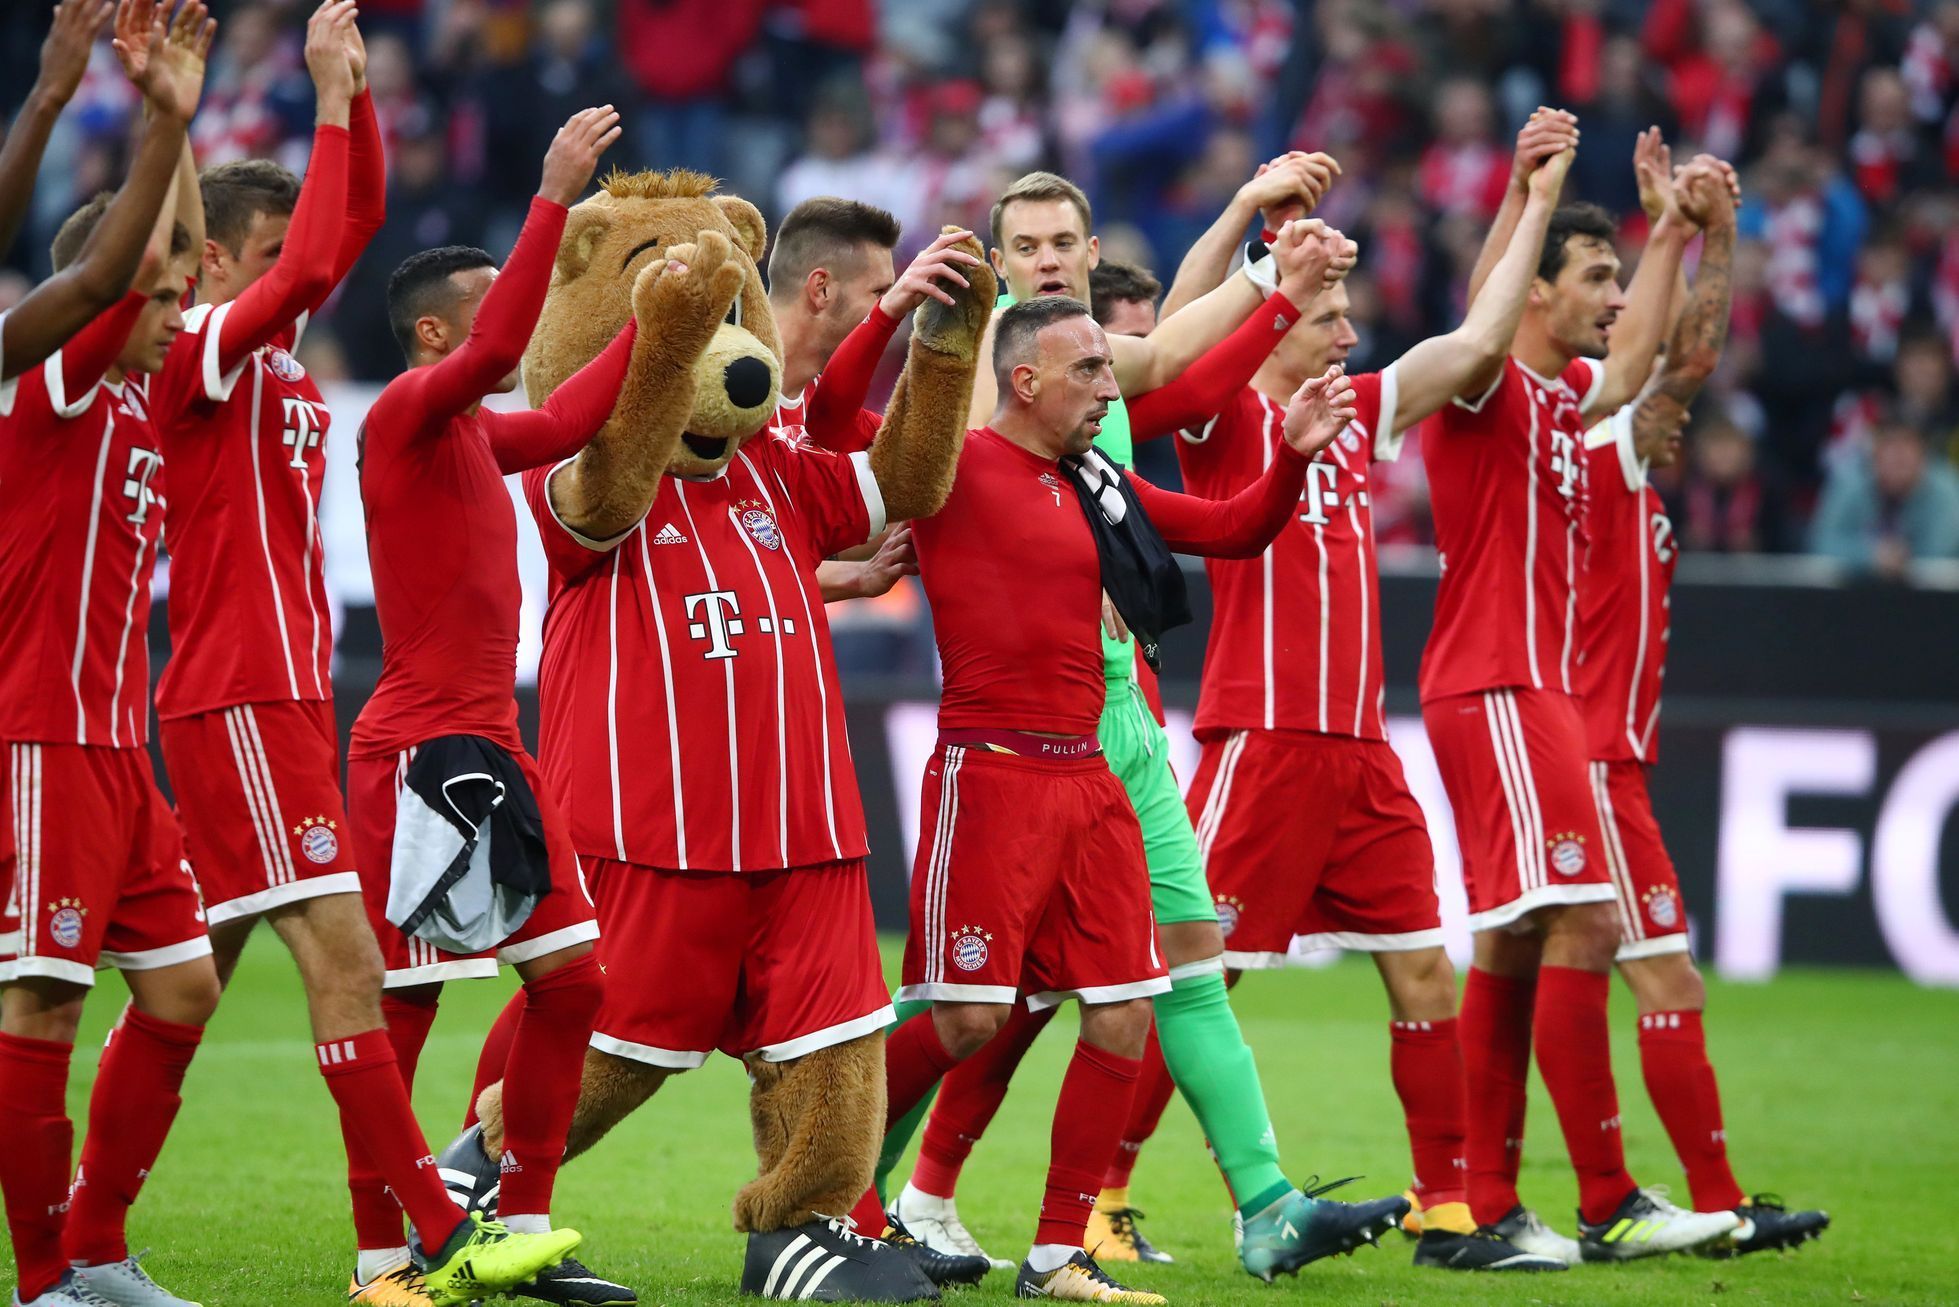 Radost Bayernu v zápase proti Mohuči